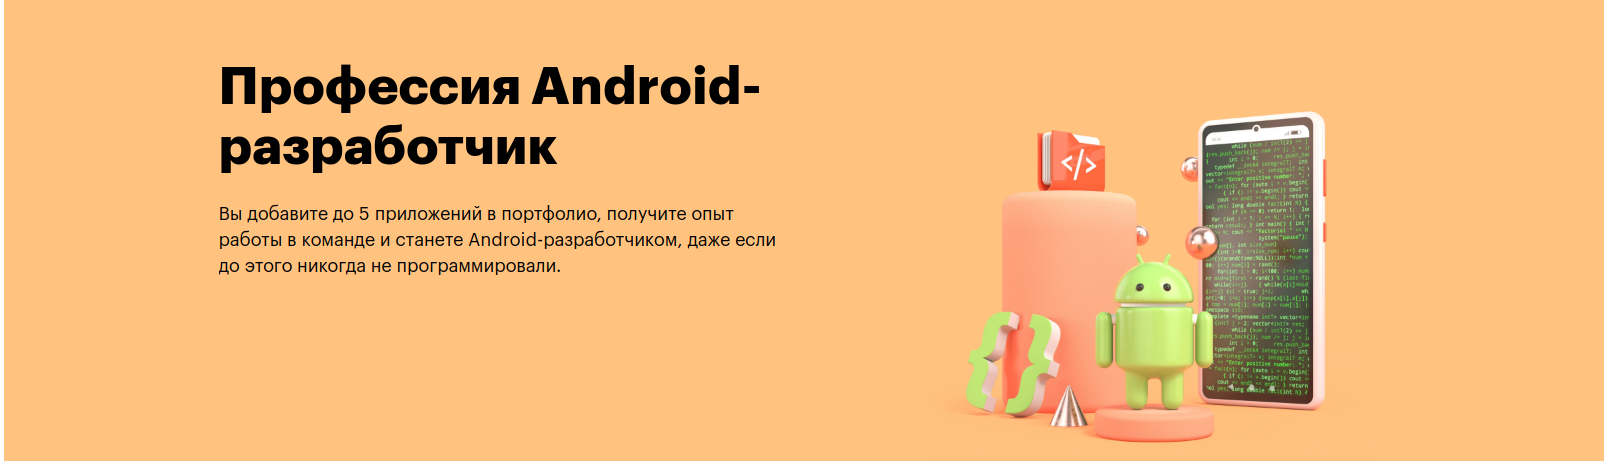 Профессия Android-разработчик от Skillbox